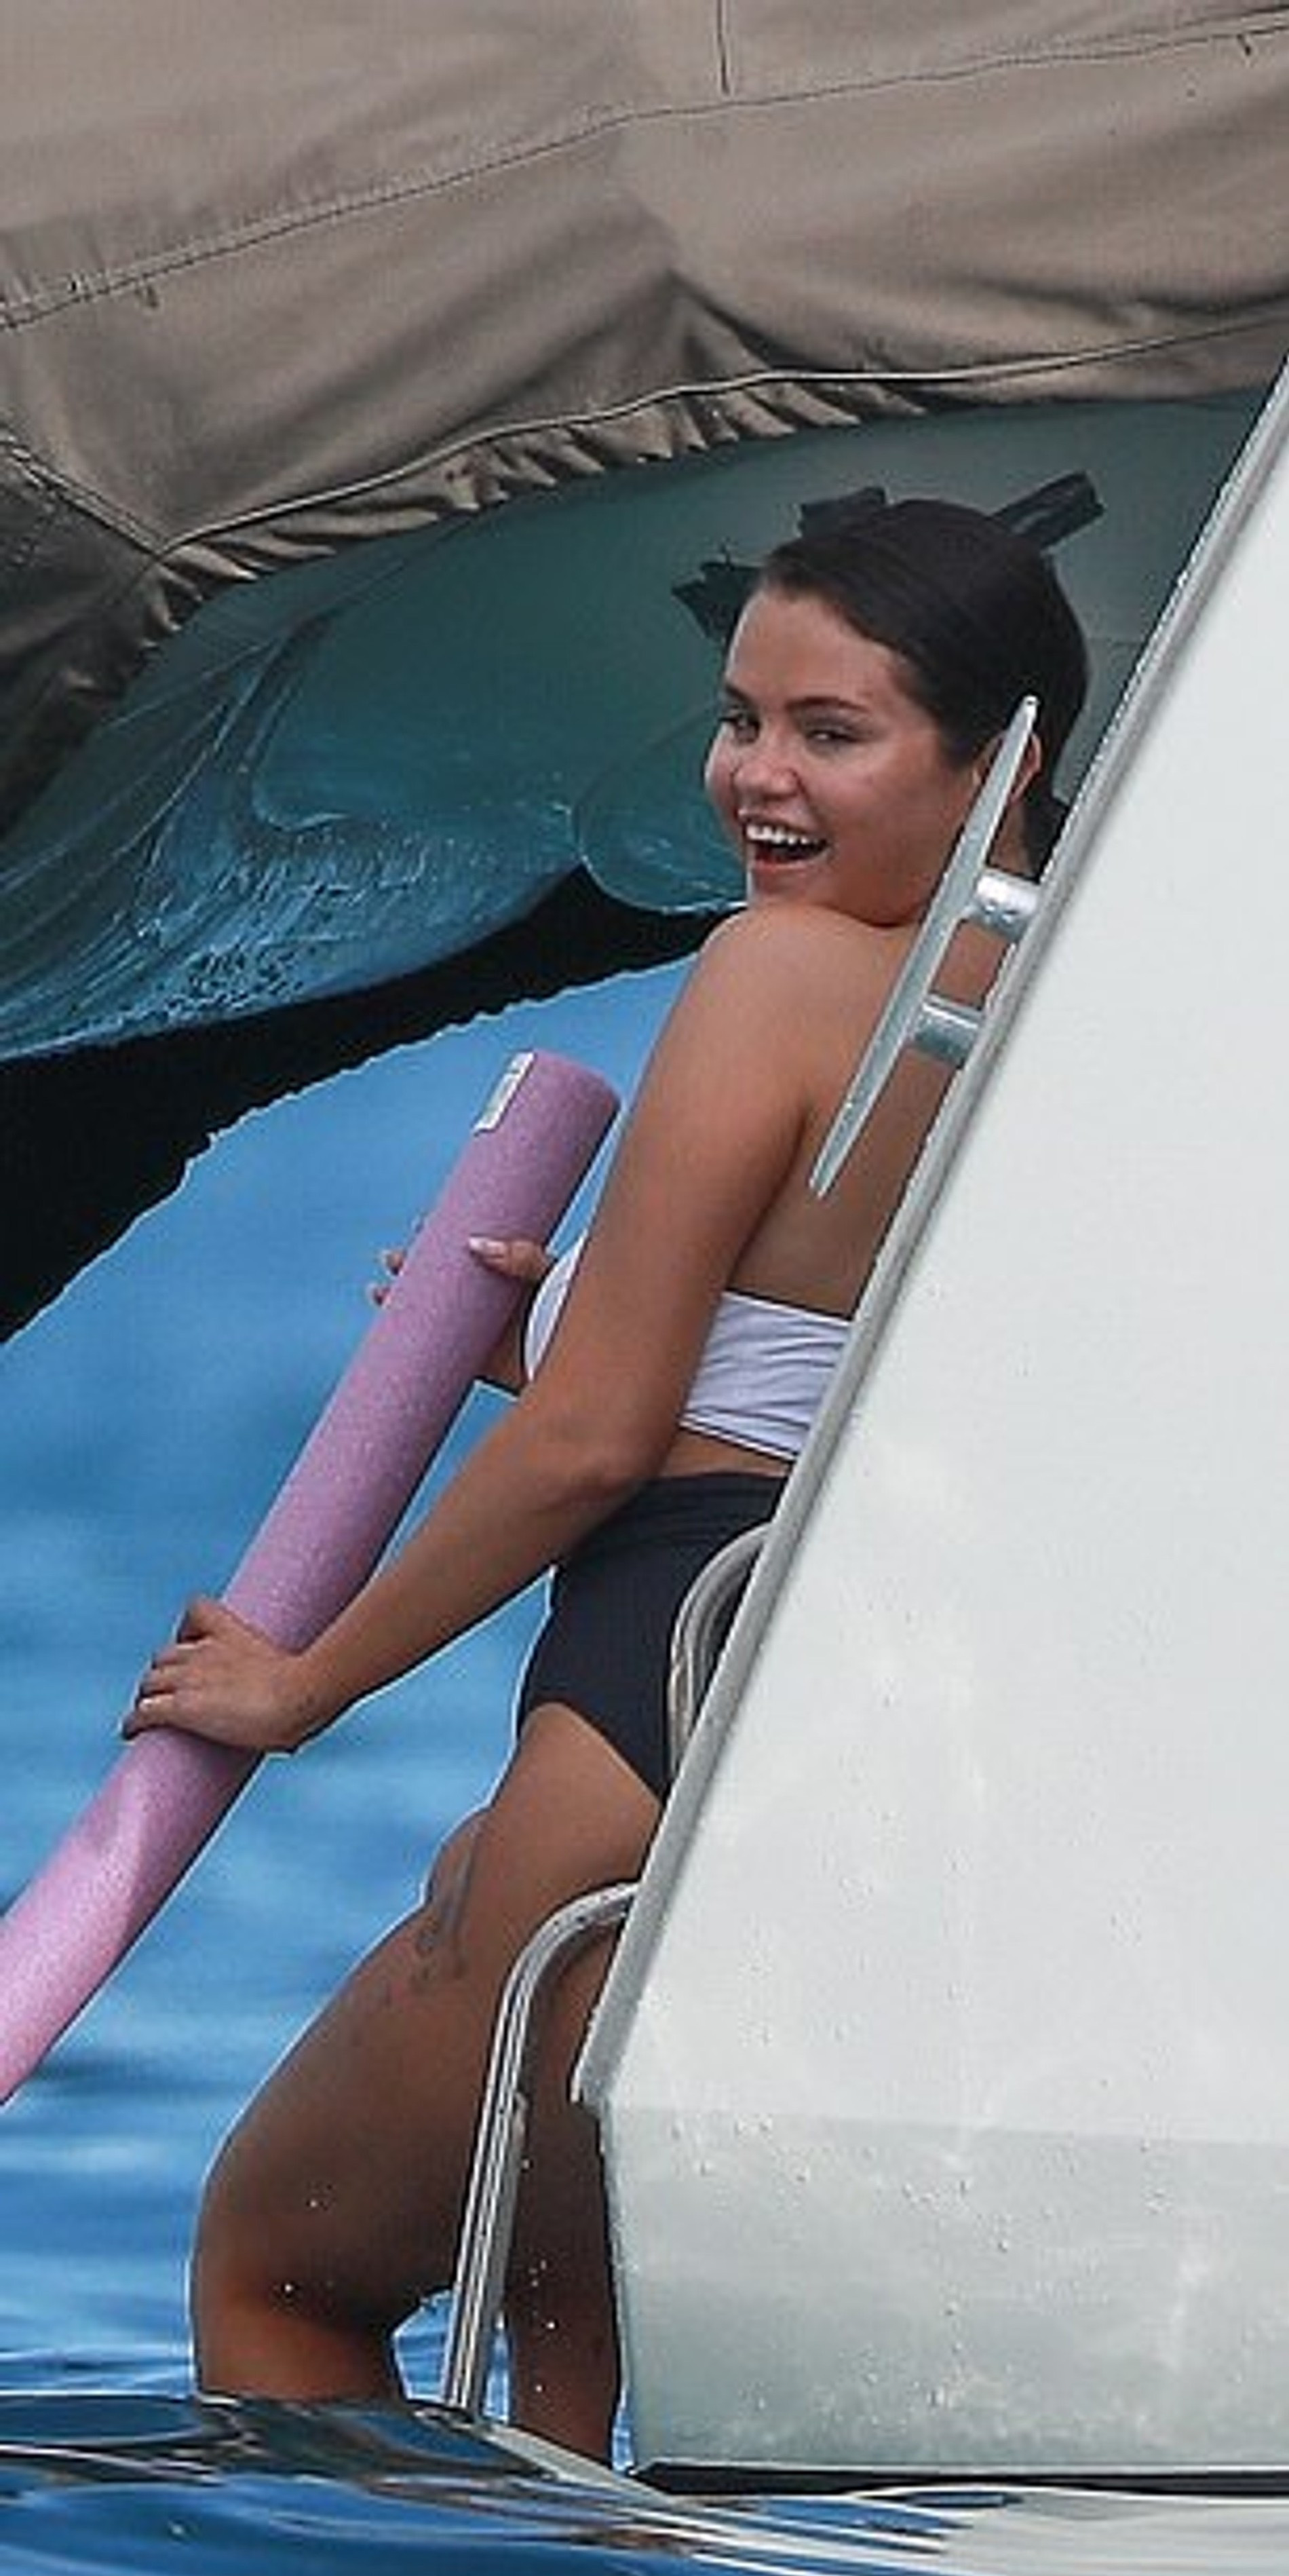 Селена Гомес выходит из воды после купания
Фото: Daily Mail